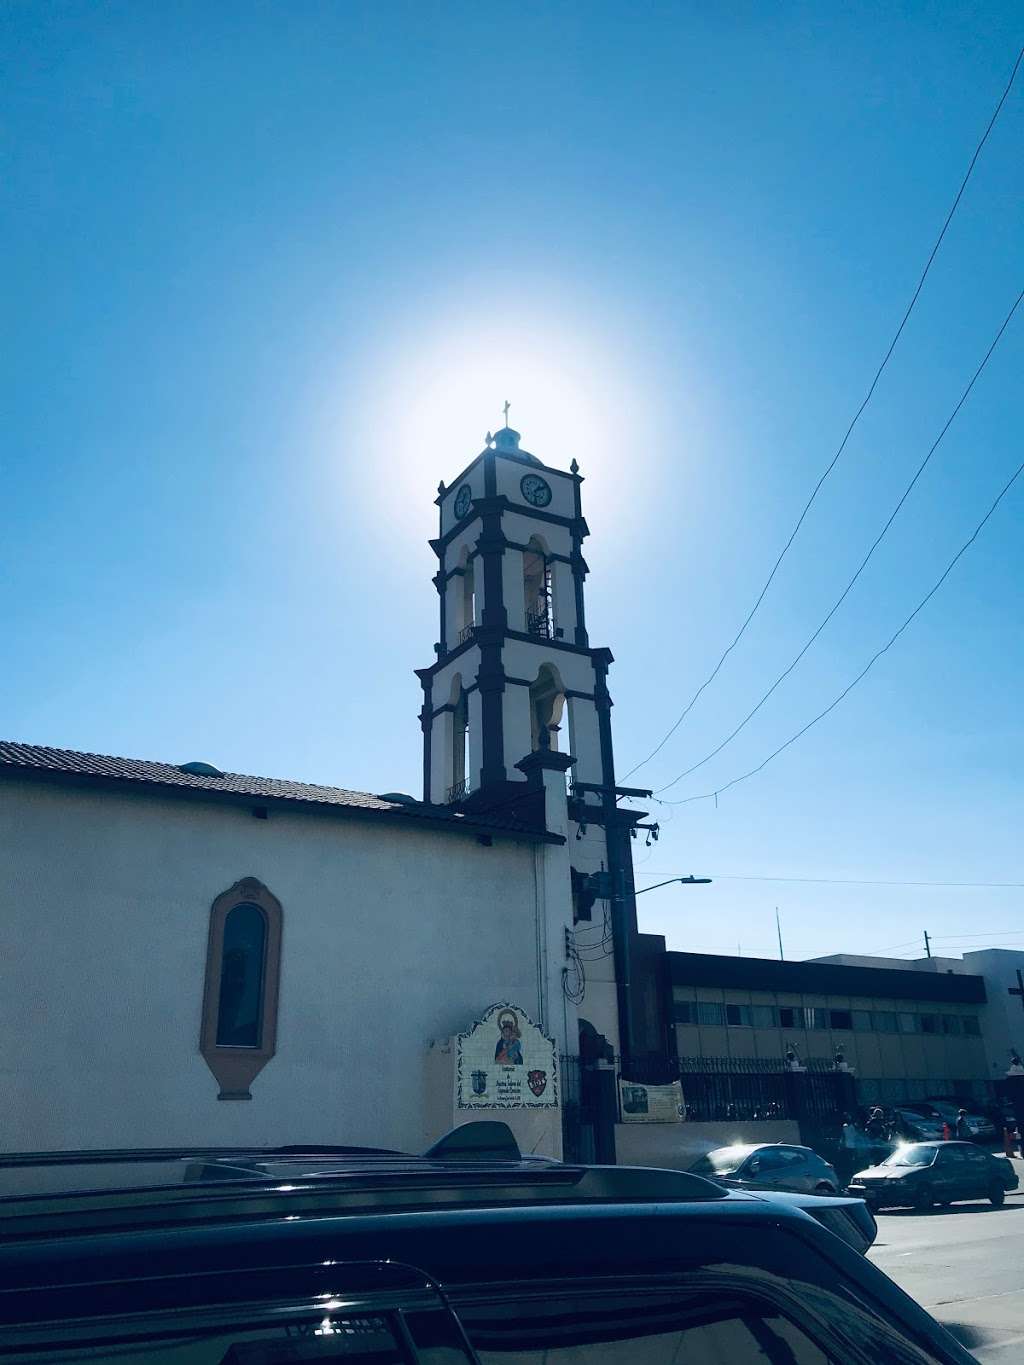 Santuario de Nuestra Señora del Sagrado Corazón | Av. Juan Sarabia 8585, Zona Centro, 20000 Tijuana, B.C., Mexico | Phone: 664 684 2822